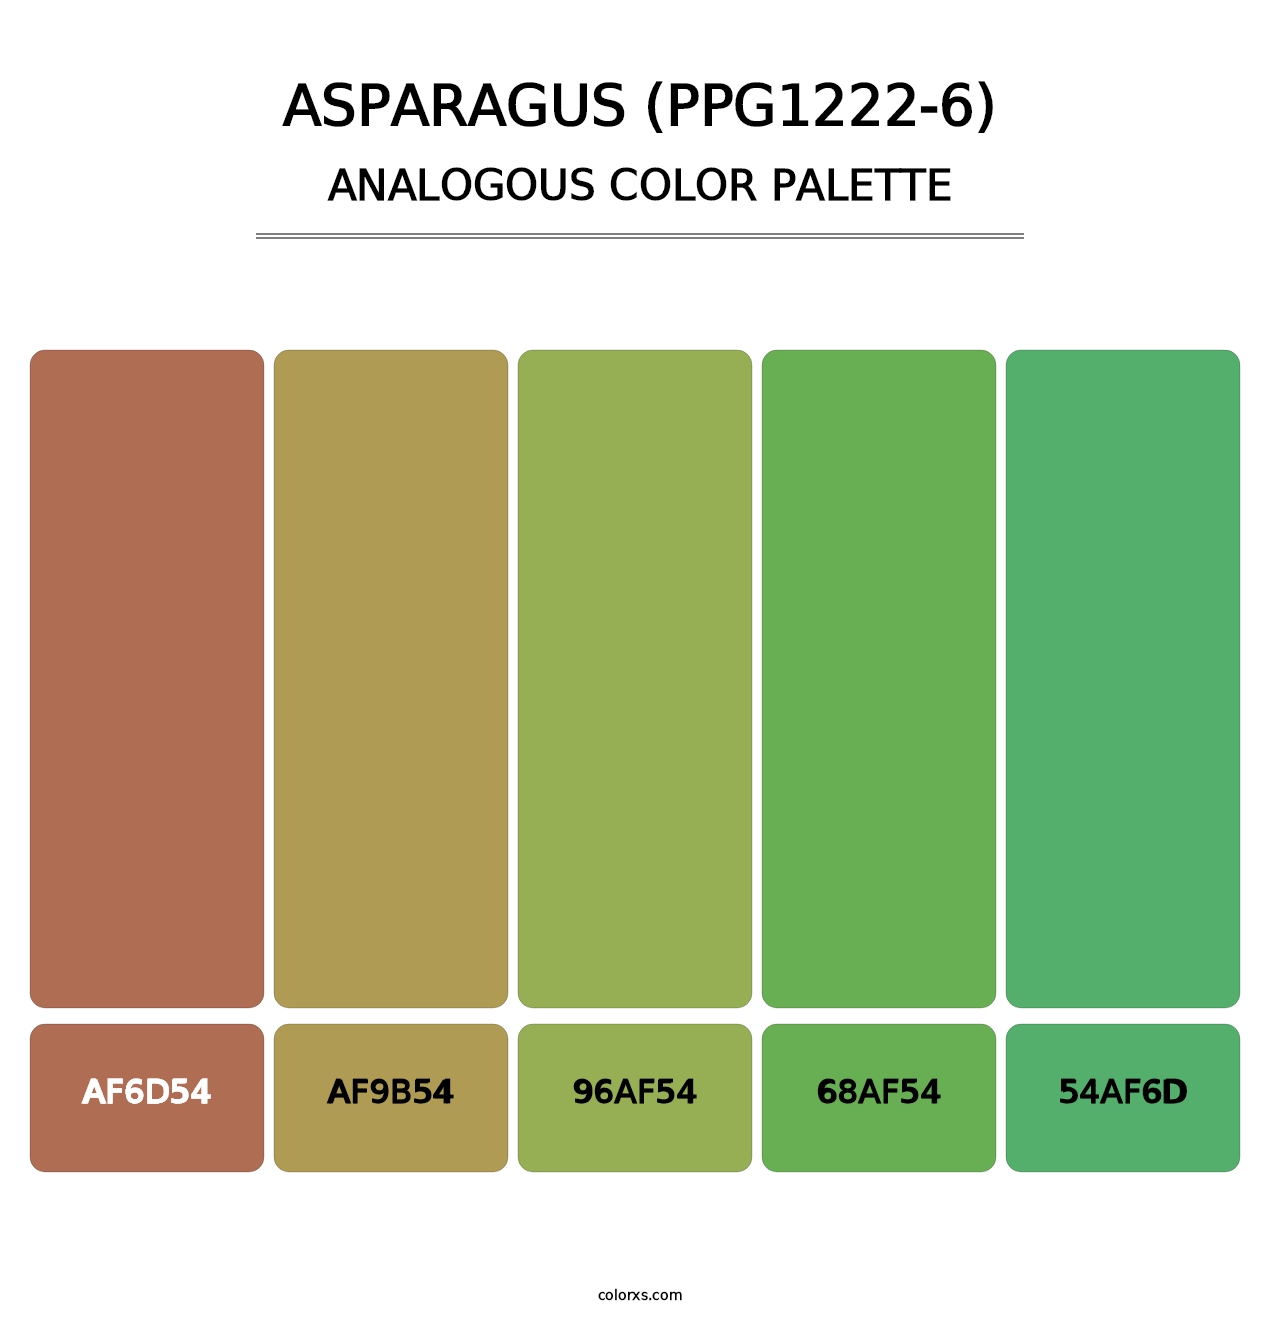 Asparagus (PPG1222-6) - Analogous Color Palette